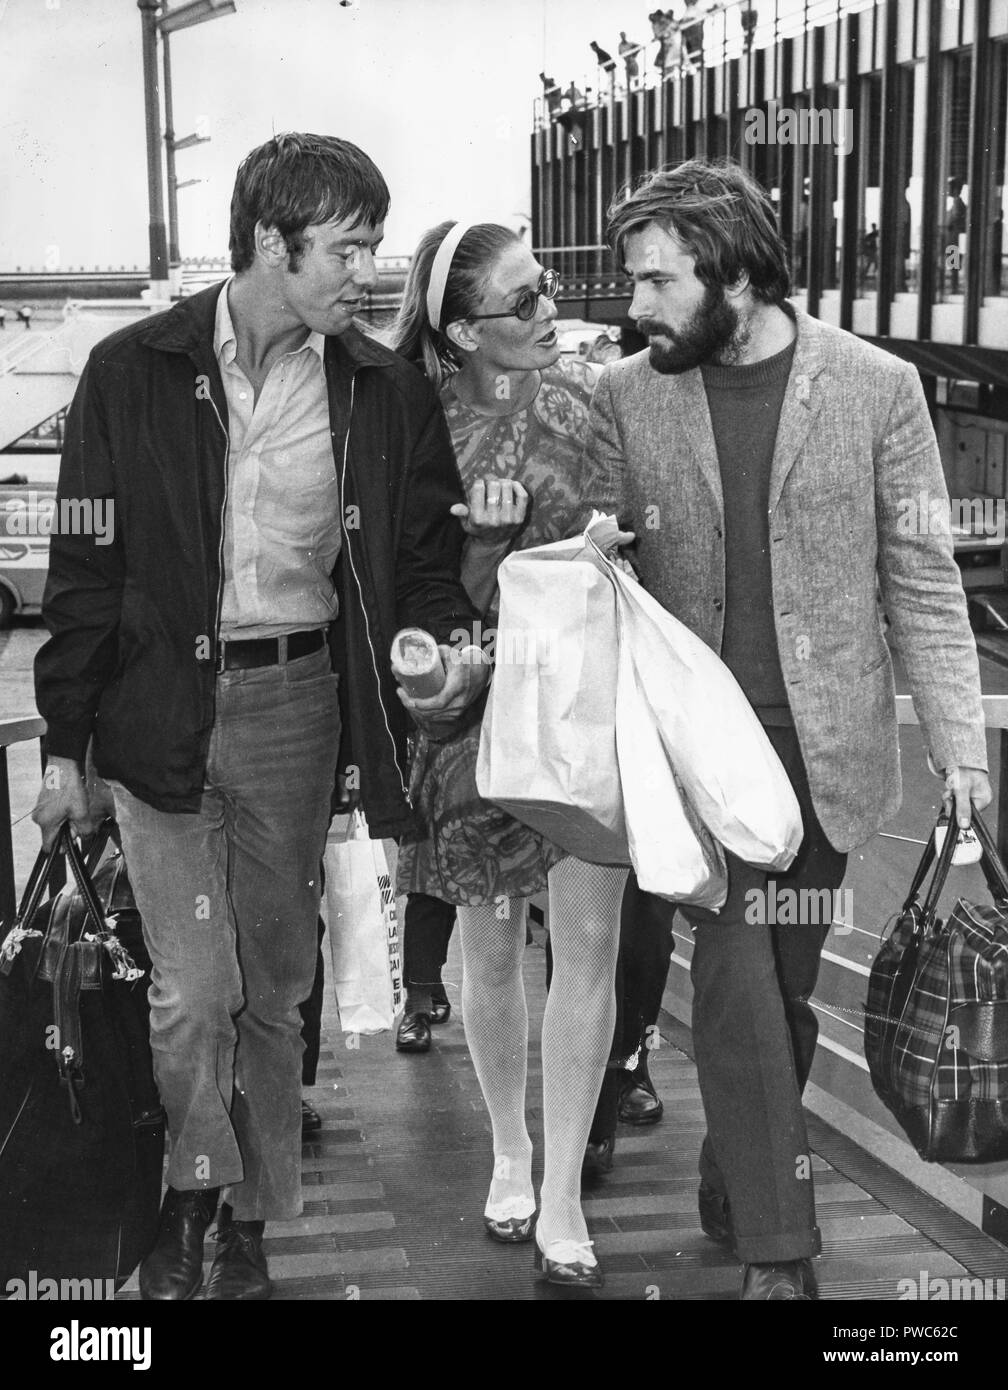 Franco nero, Vanessa Redgrave, Peter mcenery, aeroporto di Roma 1968 Foto Stock